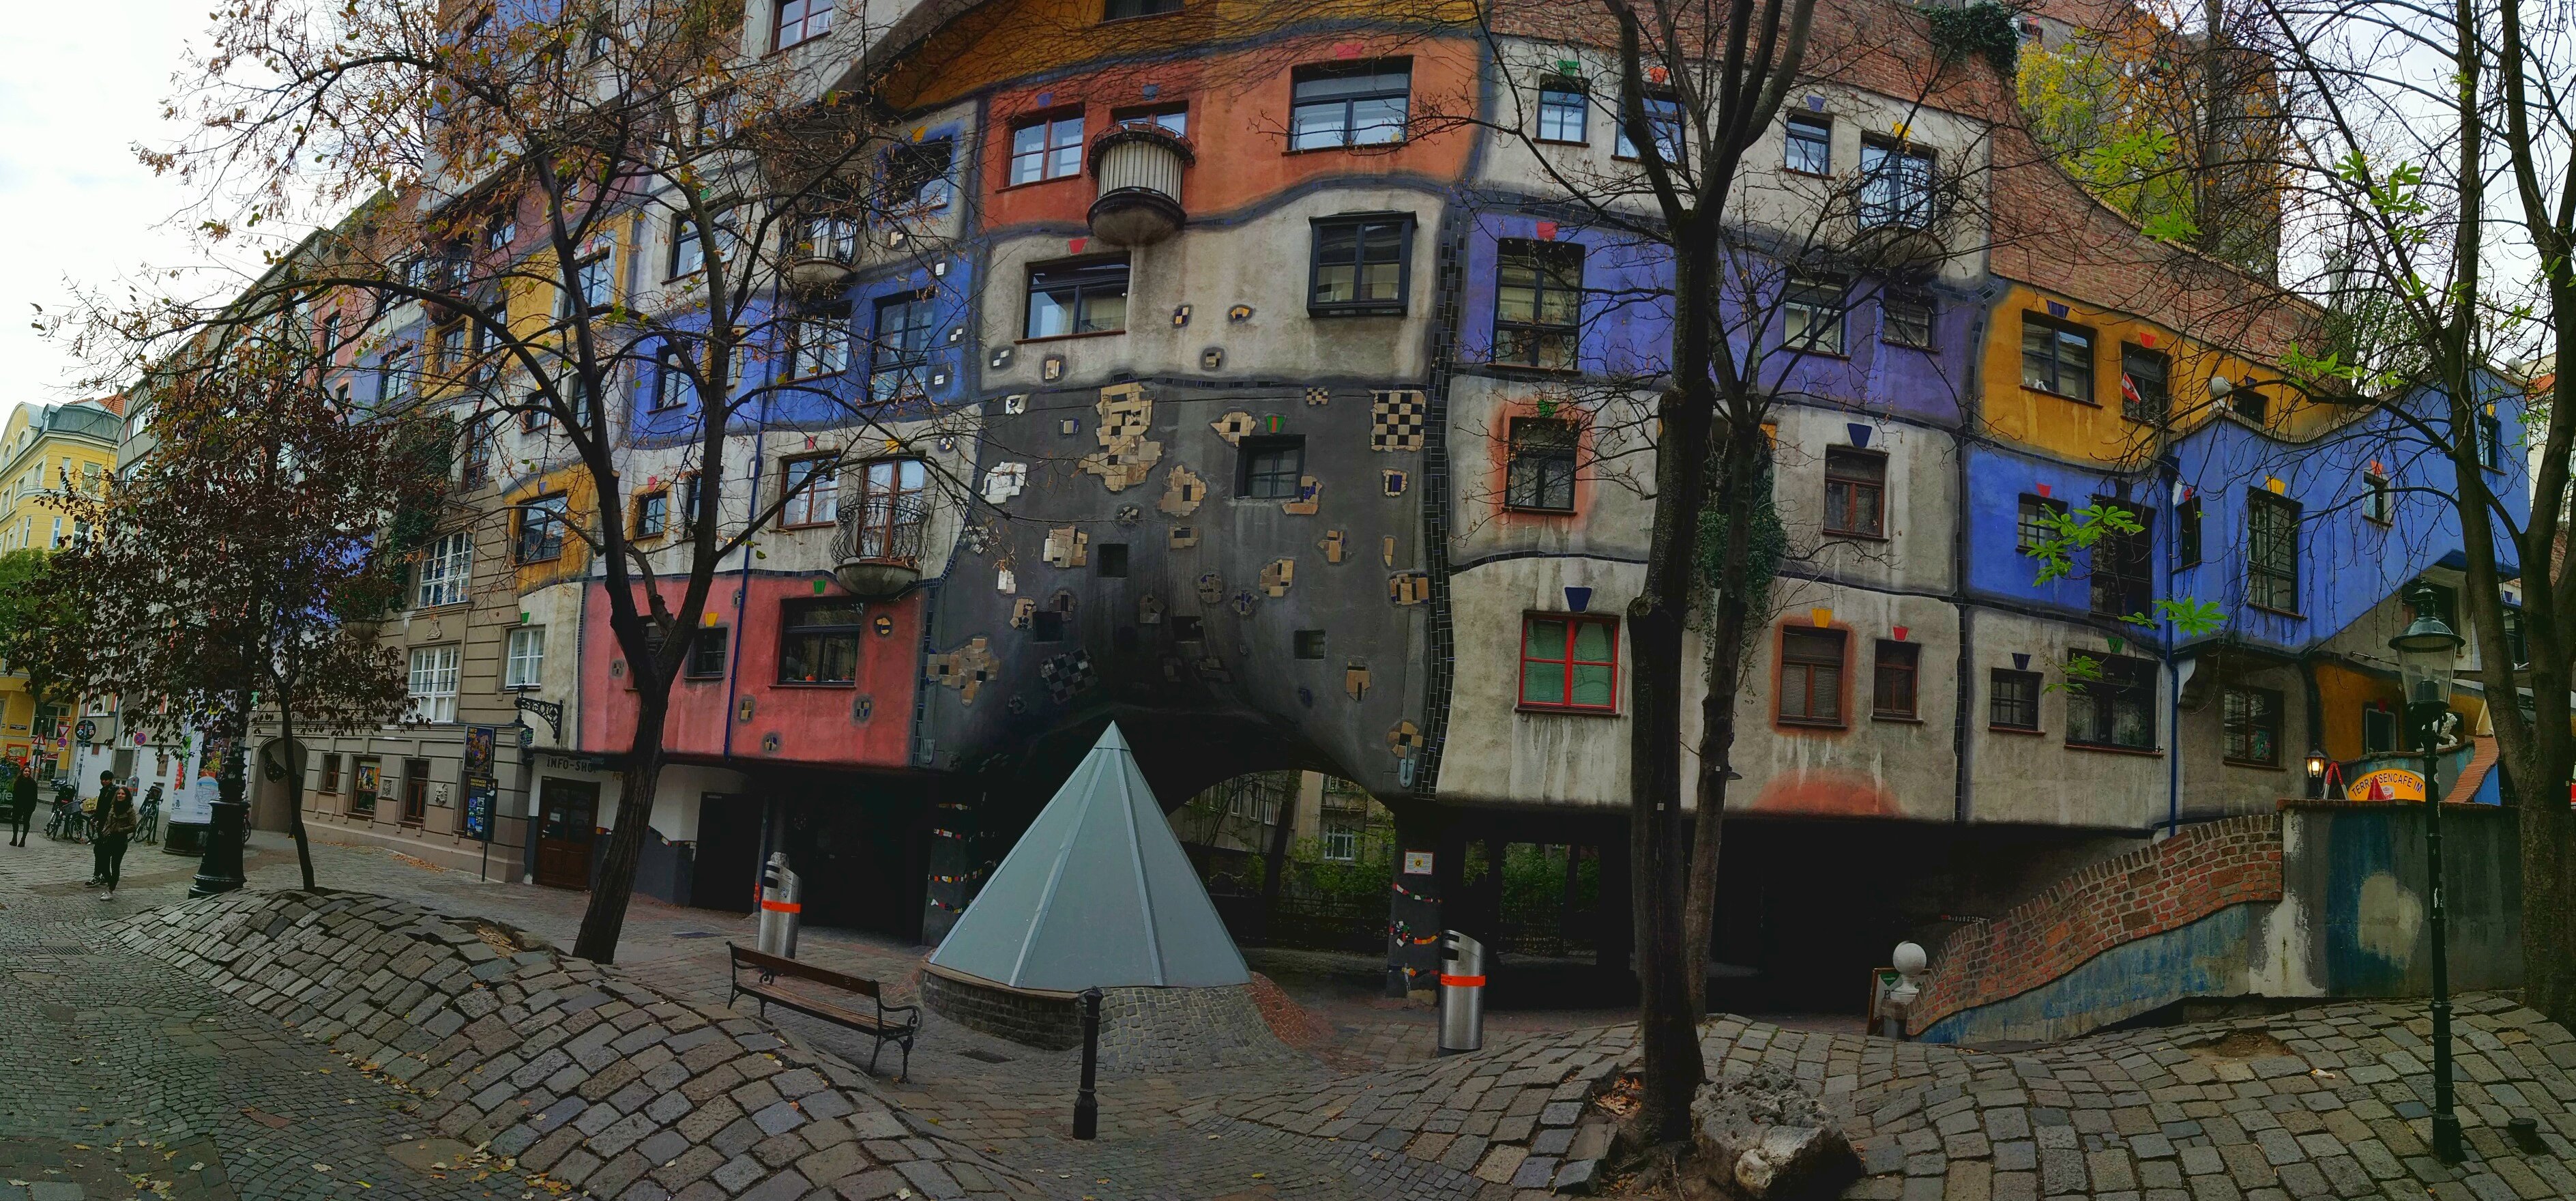 Hundertwasserhaus, complesso di case popolari colorare di Vienna